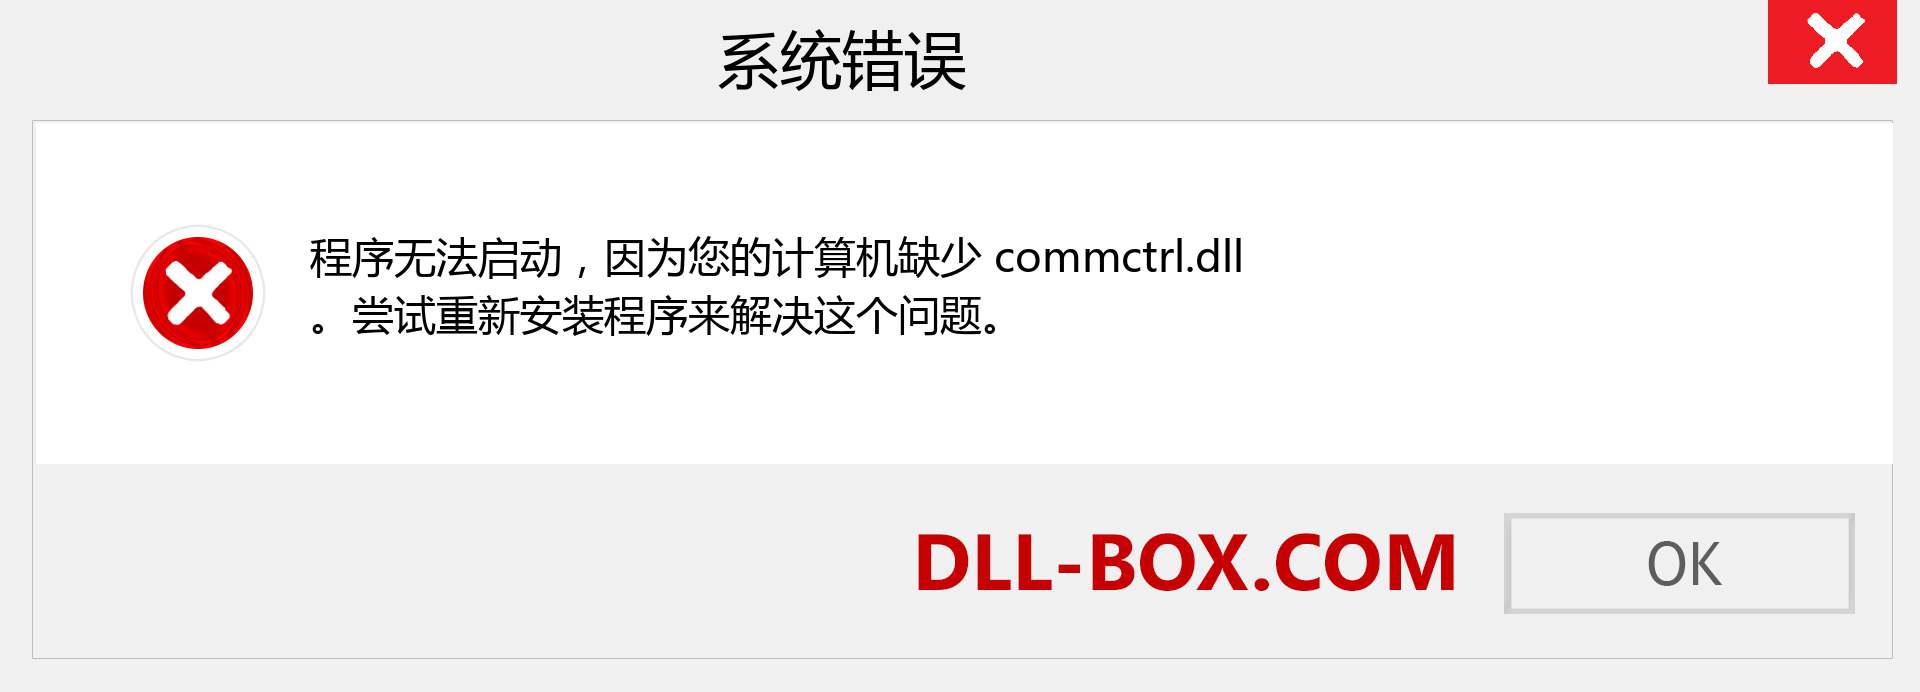 commctrl.dll 文件丢失？。 适用于 Windows 7、8、10 的下载 - 修复 Windows、照片、图像上的 commctrl dll 丢失错误